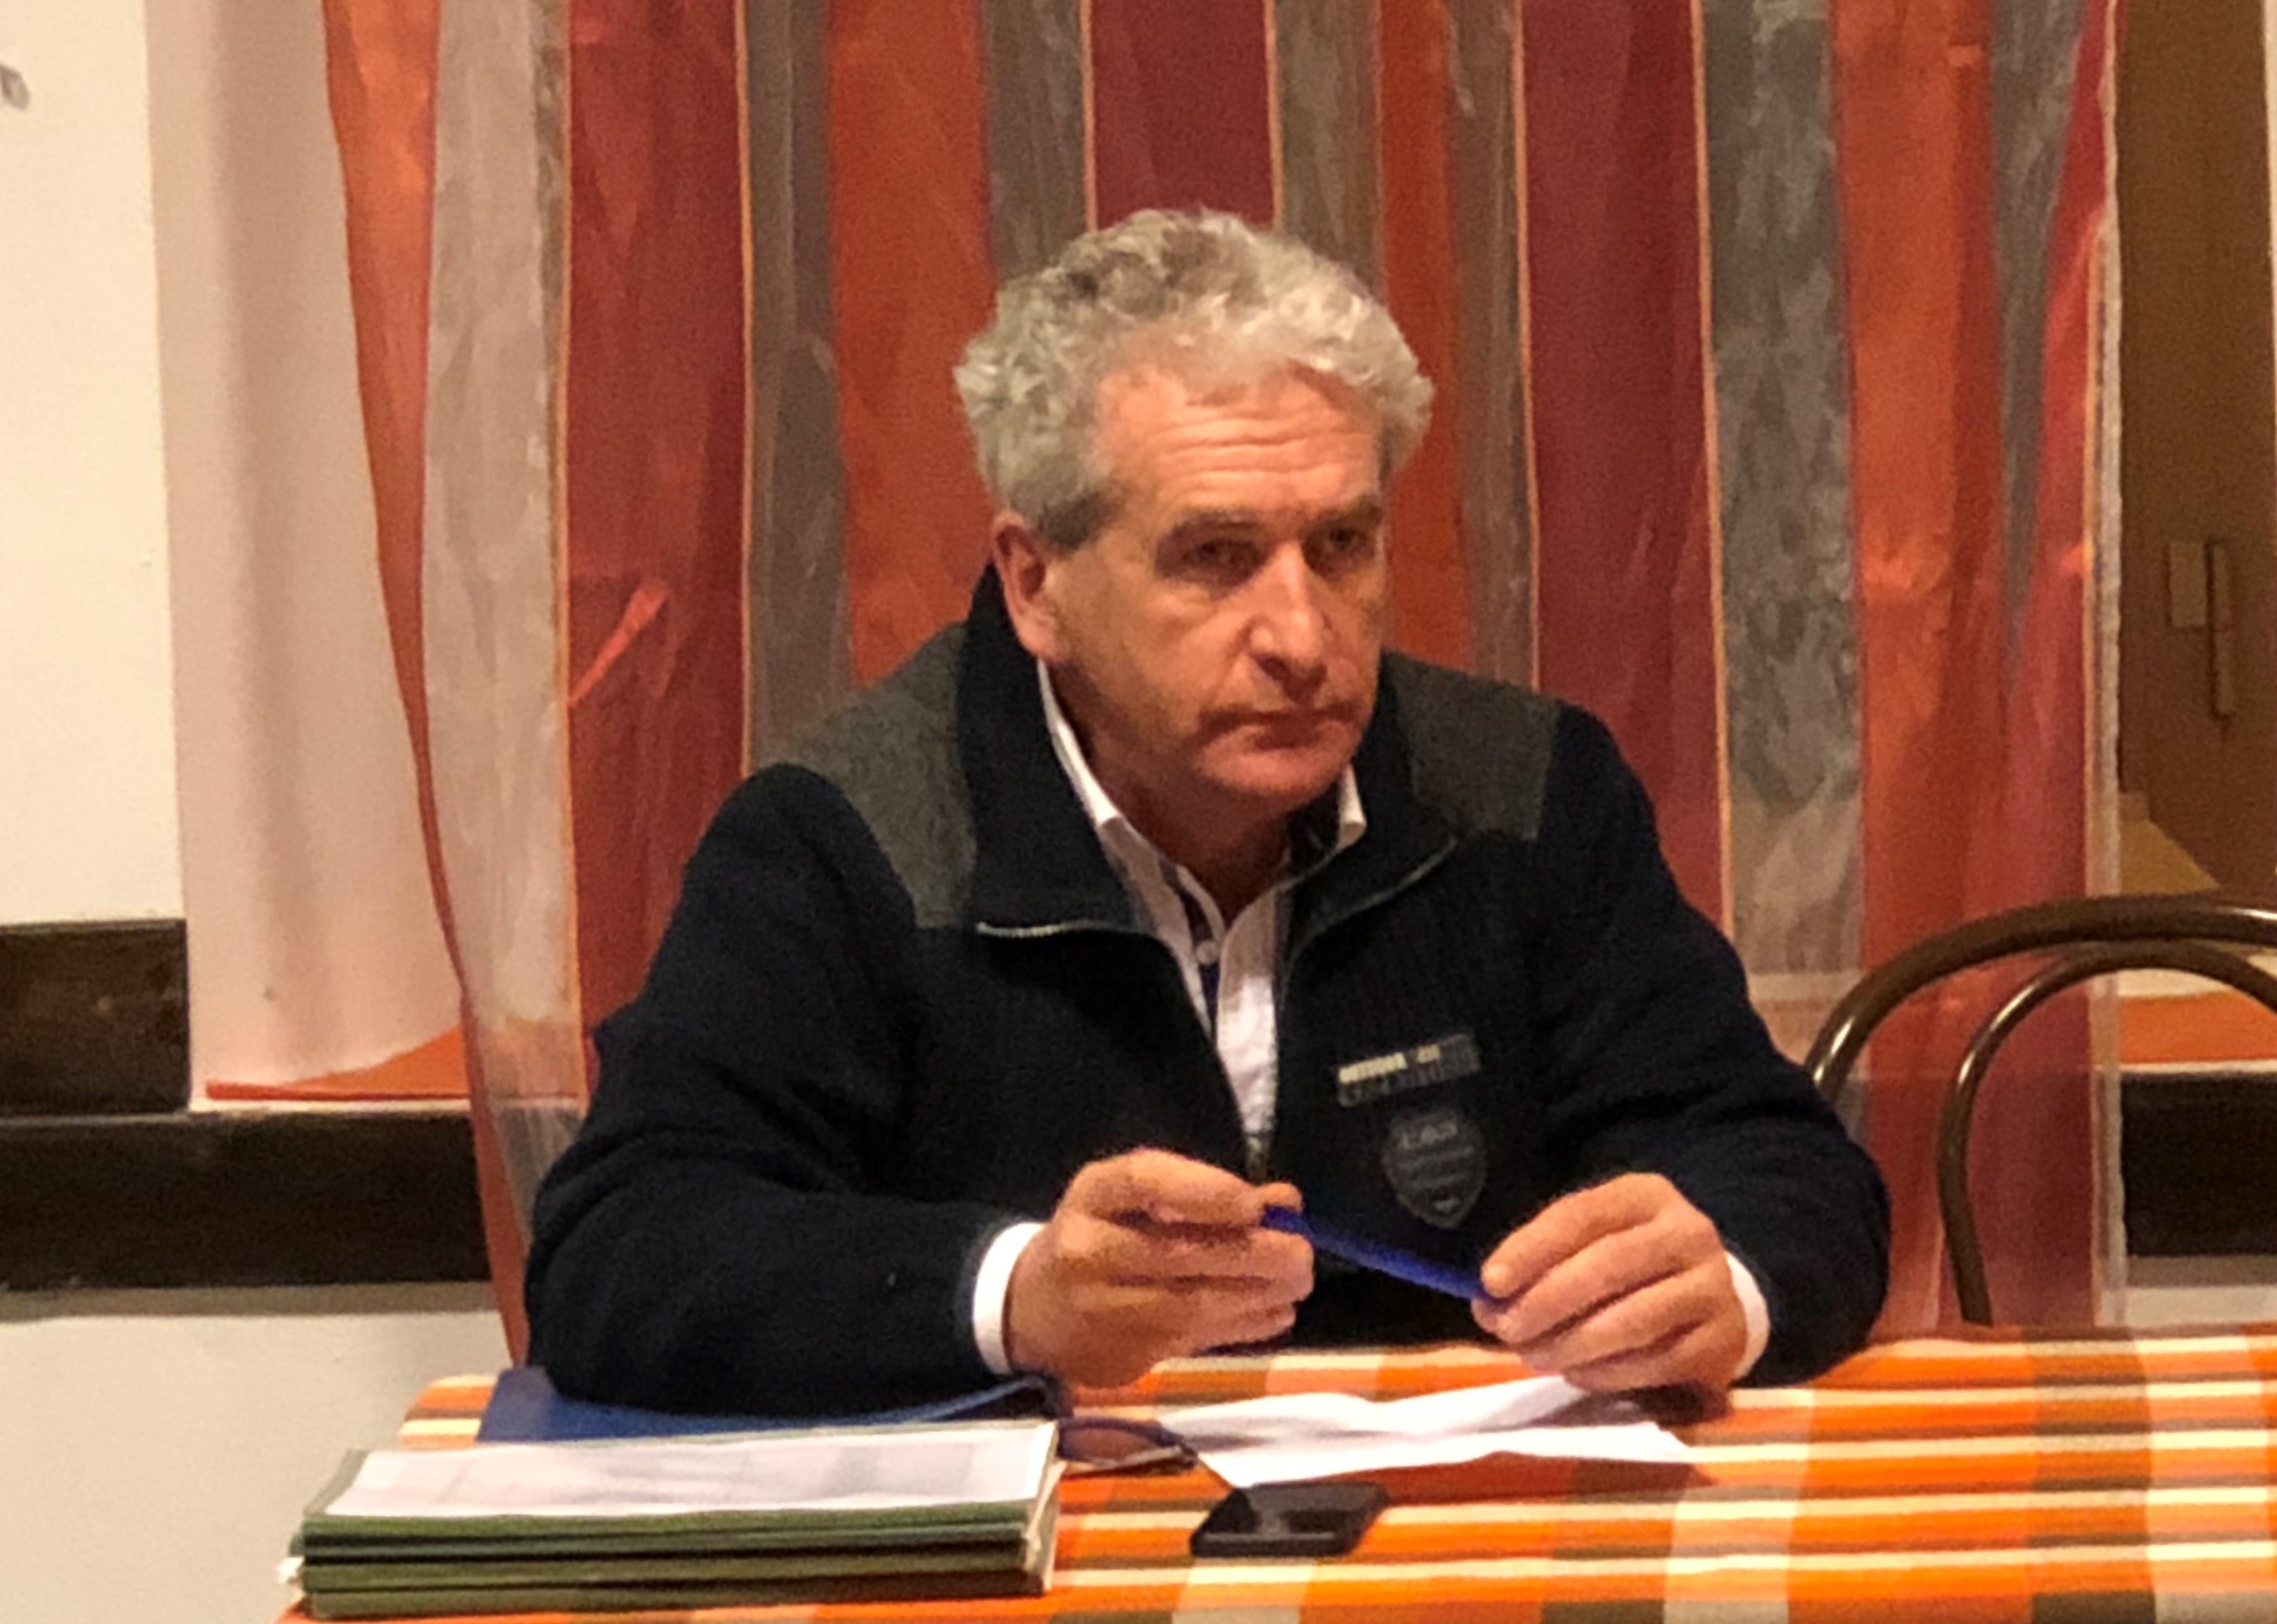 Mutti riconfermato presidente dei commercianti di Corso Acqui